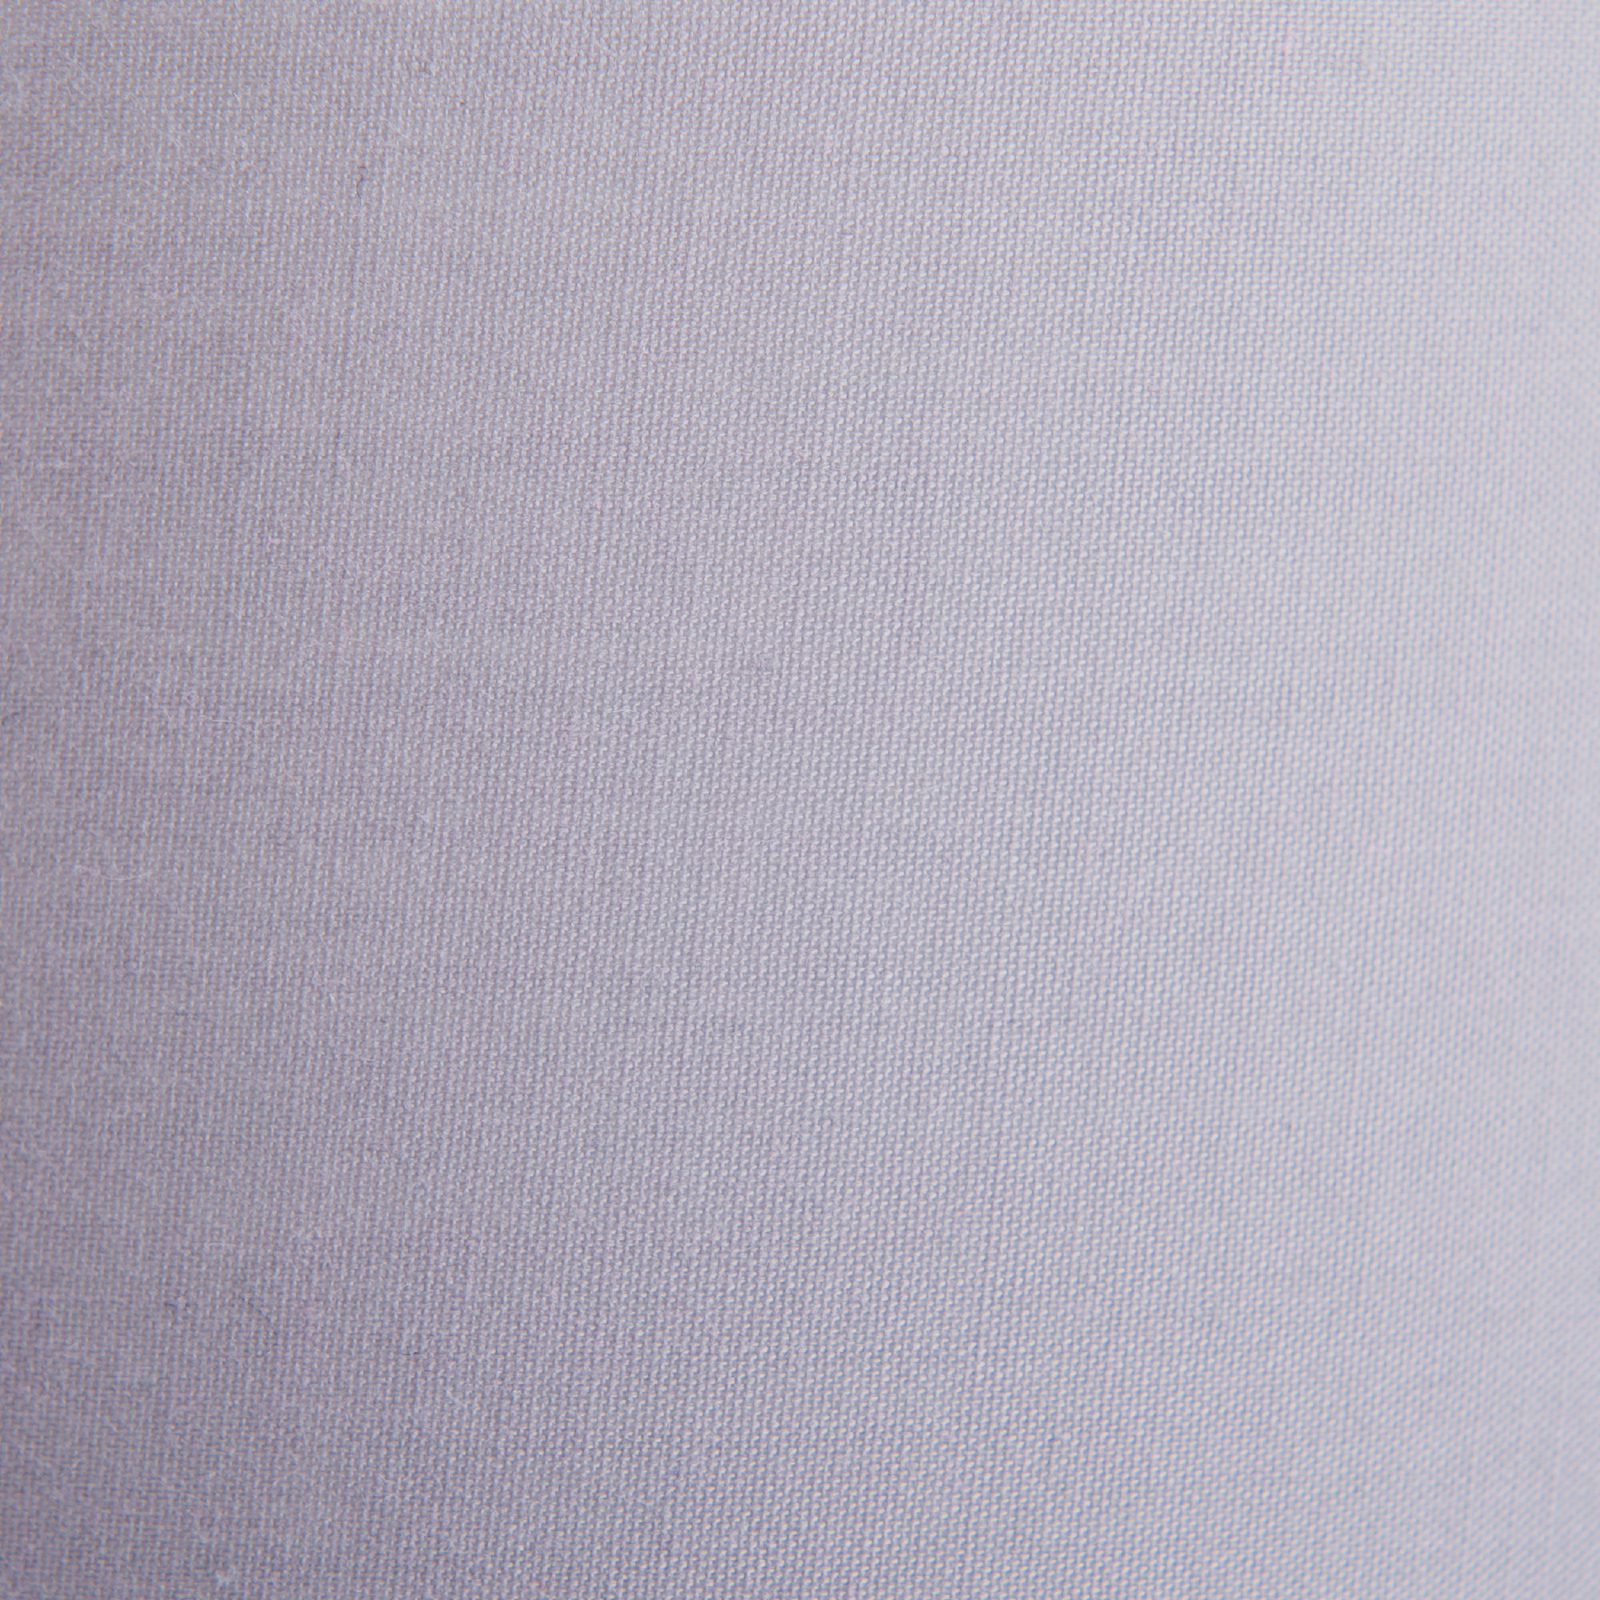 Suspension Tilde abat-jour textile 4 l, gris/blanc